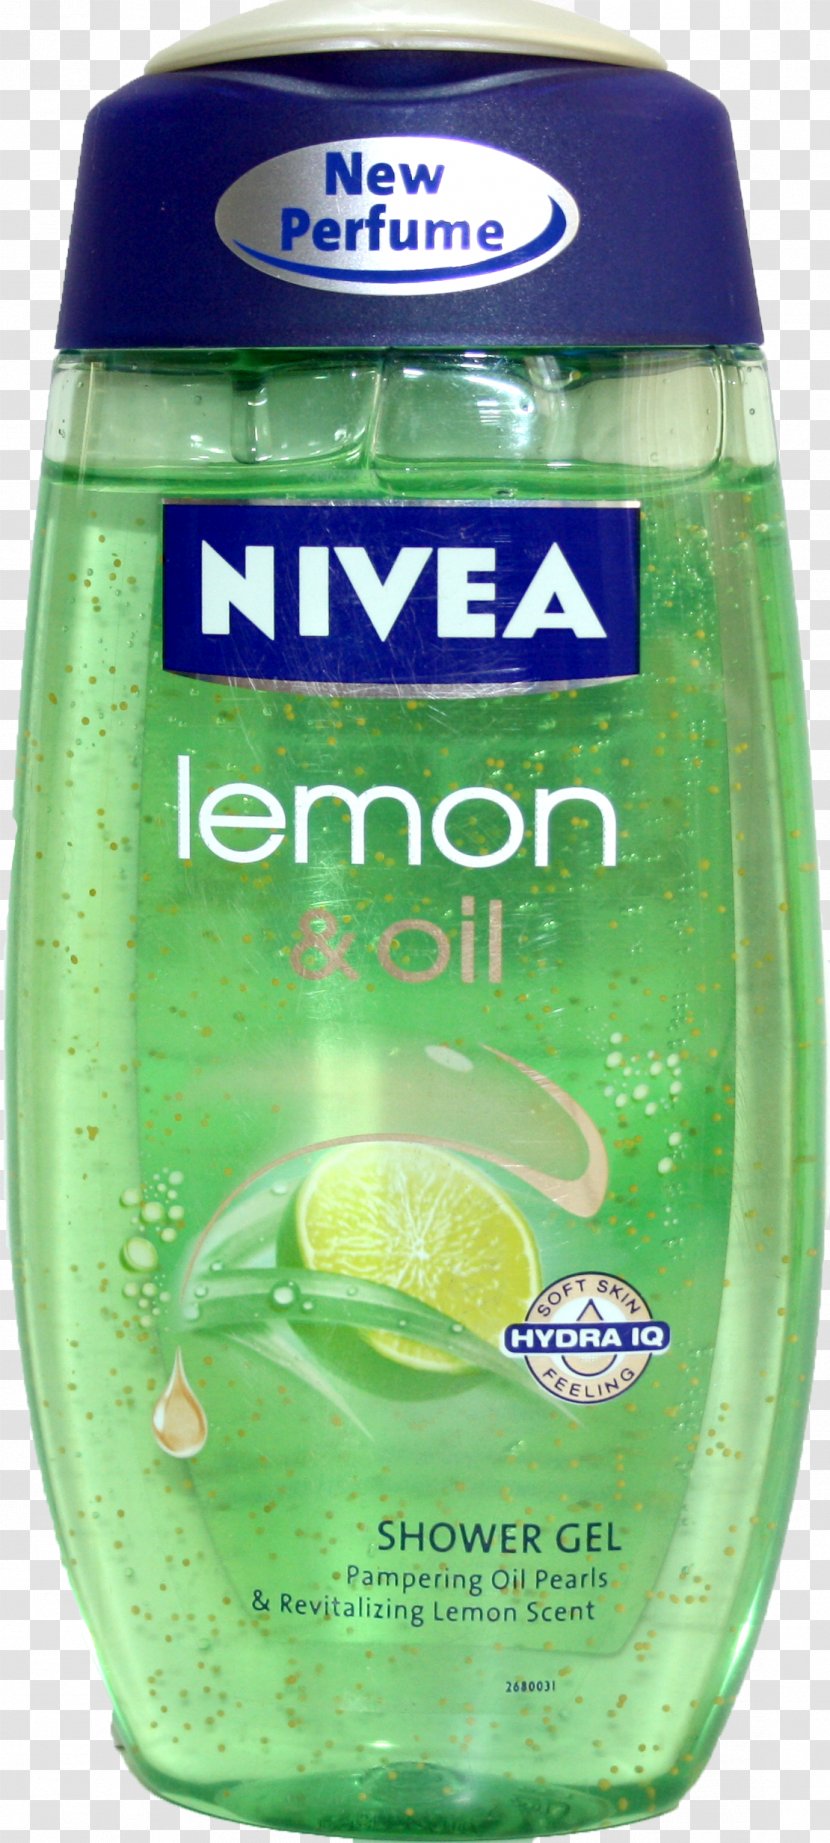 Lotion Nivea Shower Gel Palmolive Soap - Herb - Body Wash Transparent PNG